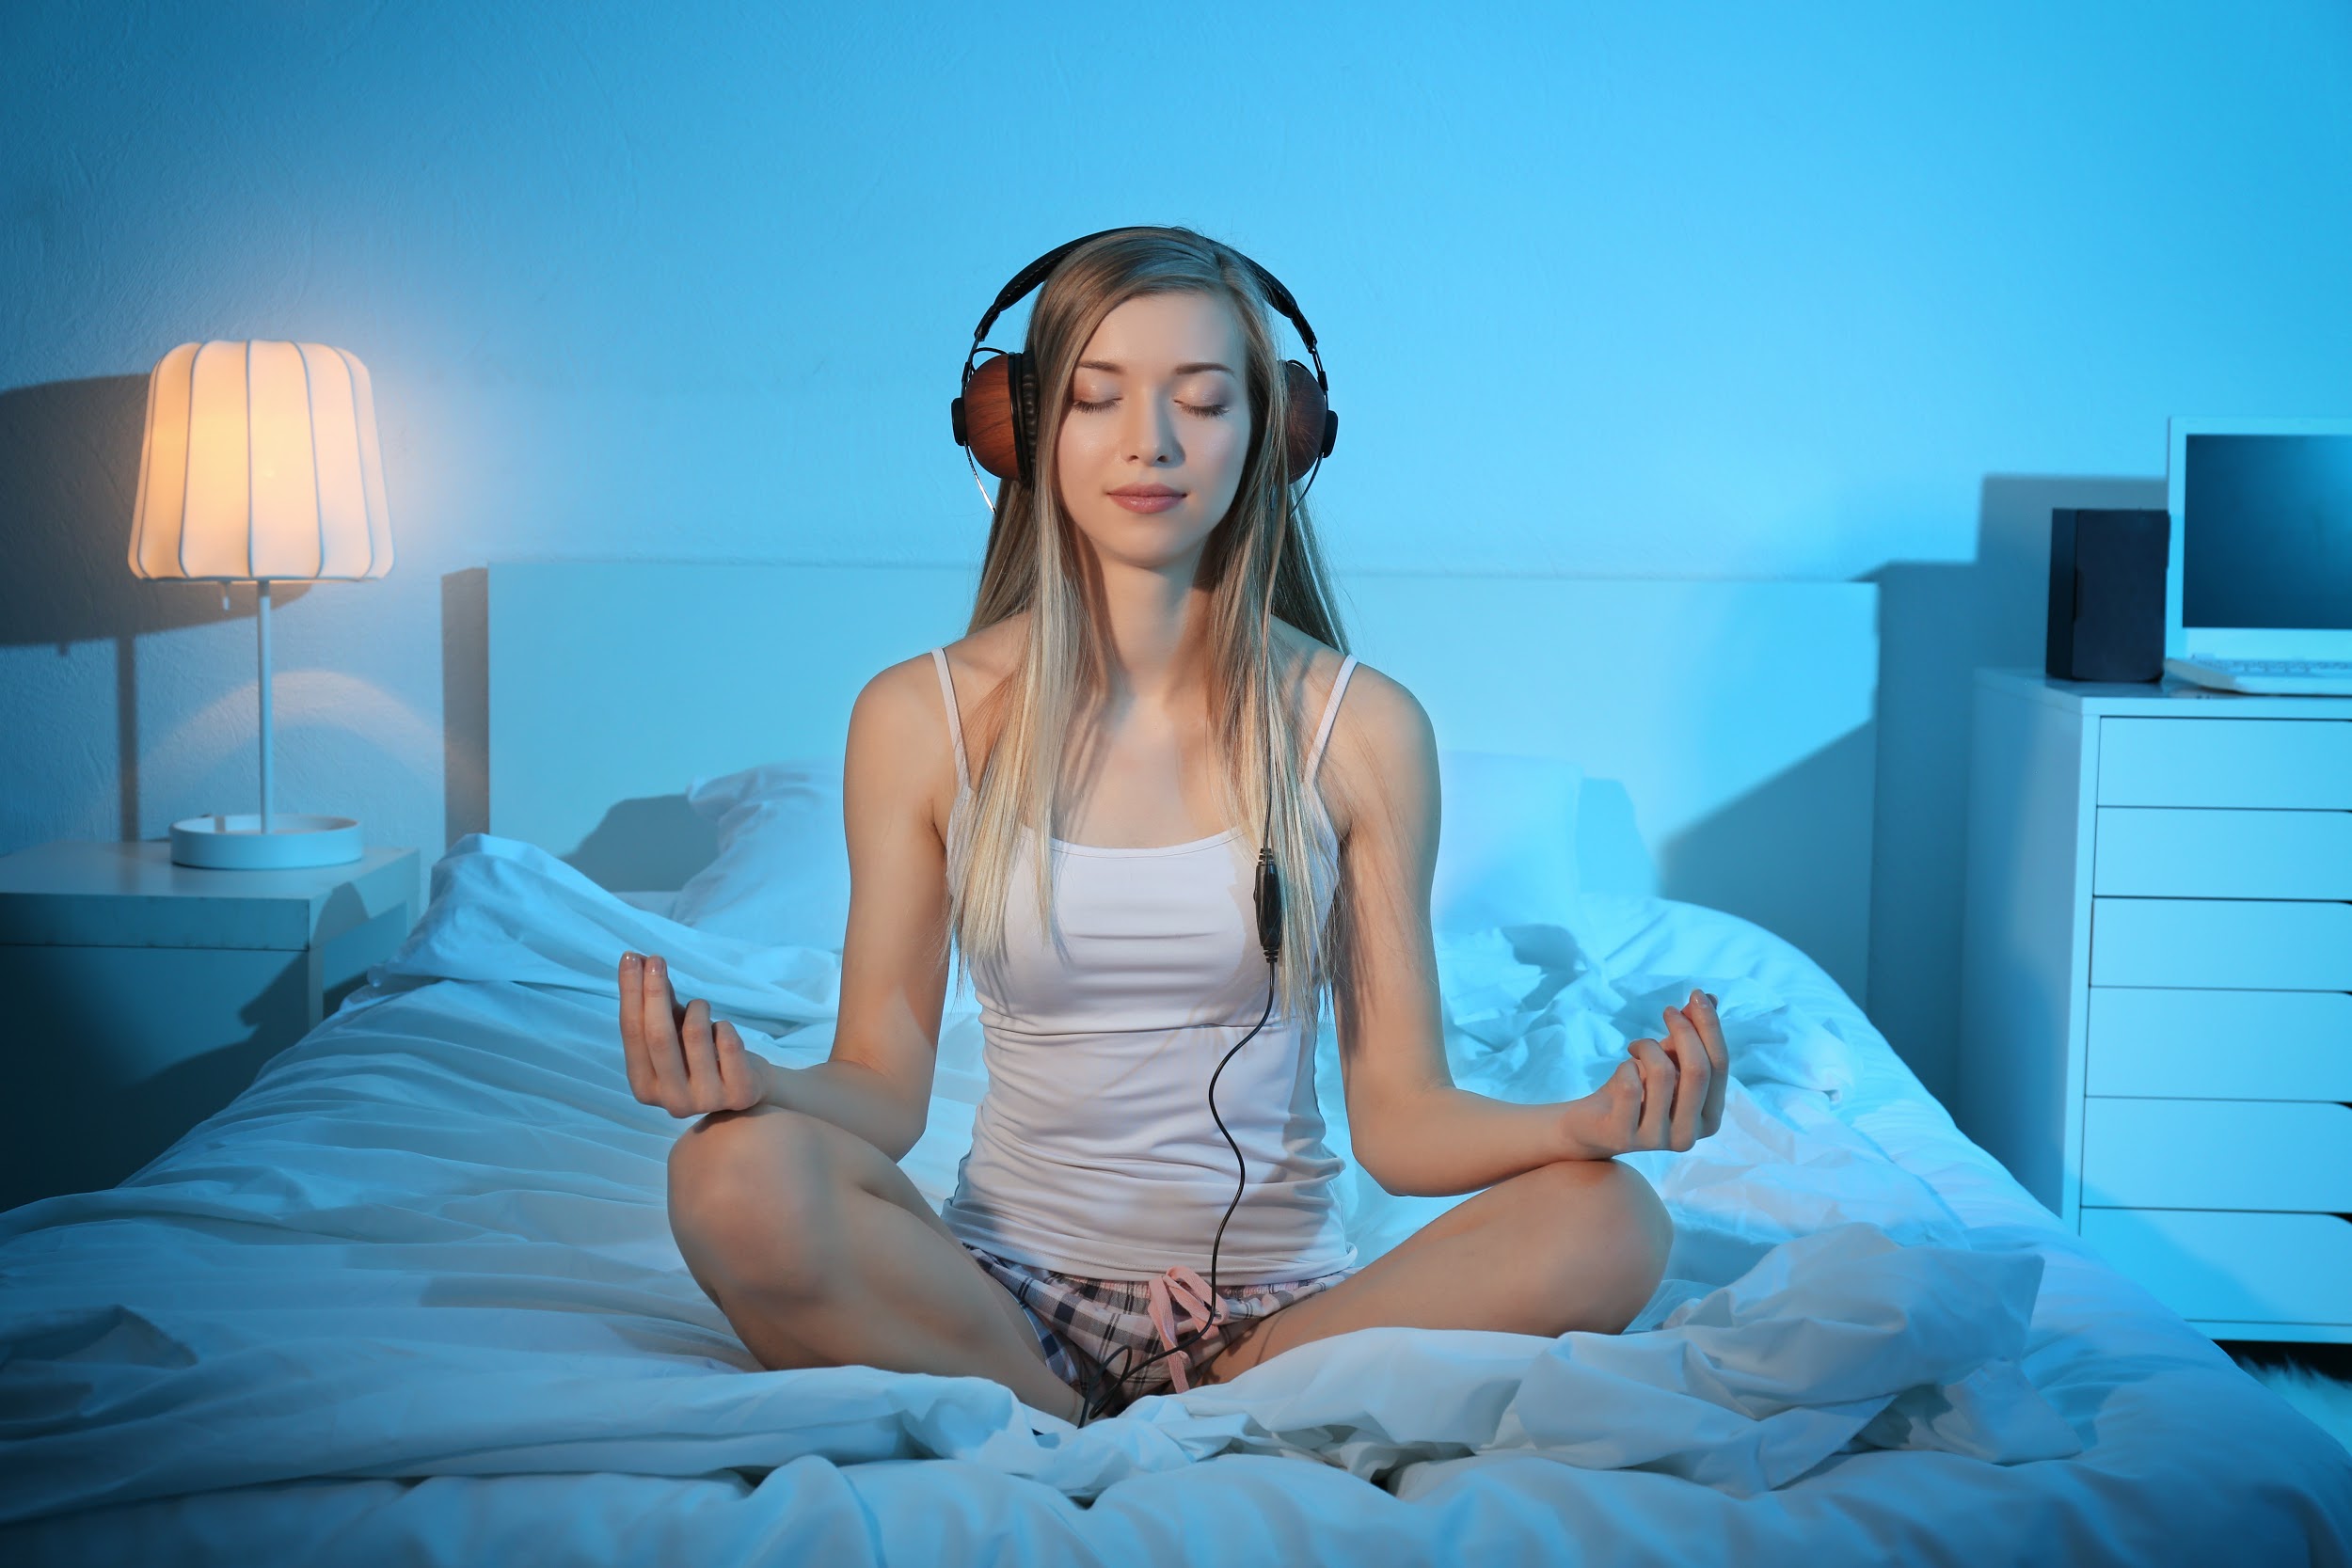 Релаксация для сна с голосом. Медитация для сна. Медитация перед сном. Медитация для сна для женщин. Расслабление перед сном.